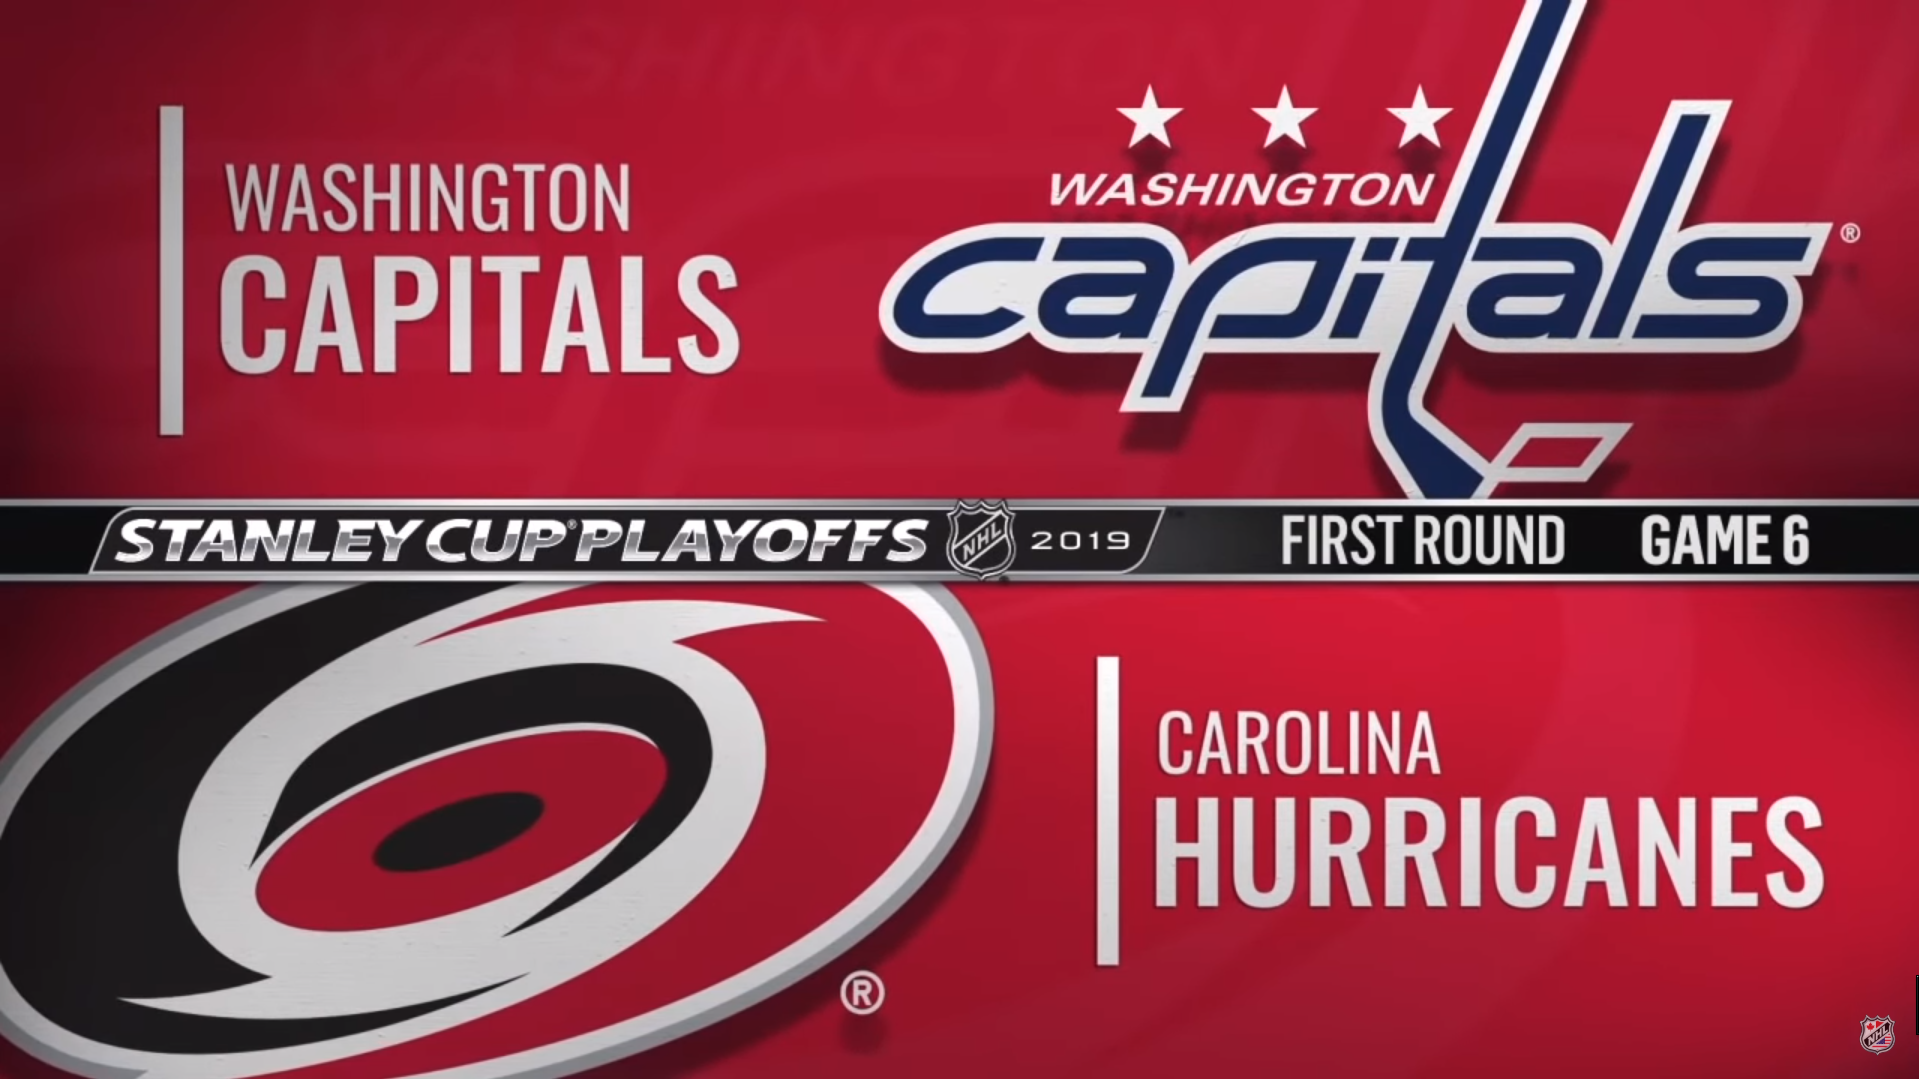 Washington Capitals - Carolina Hurricanes